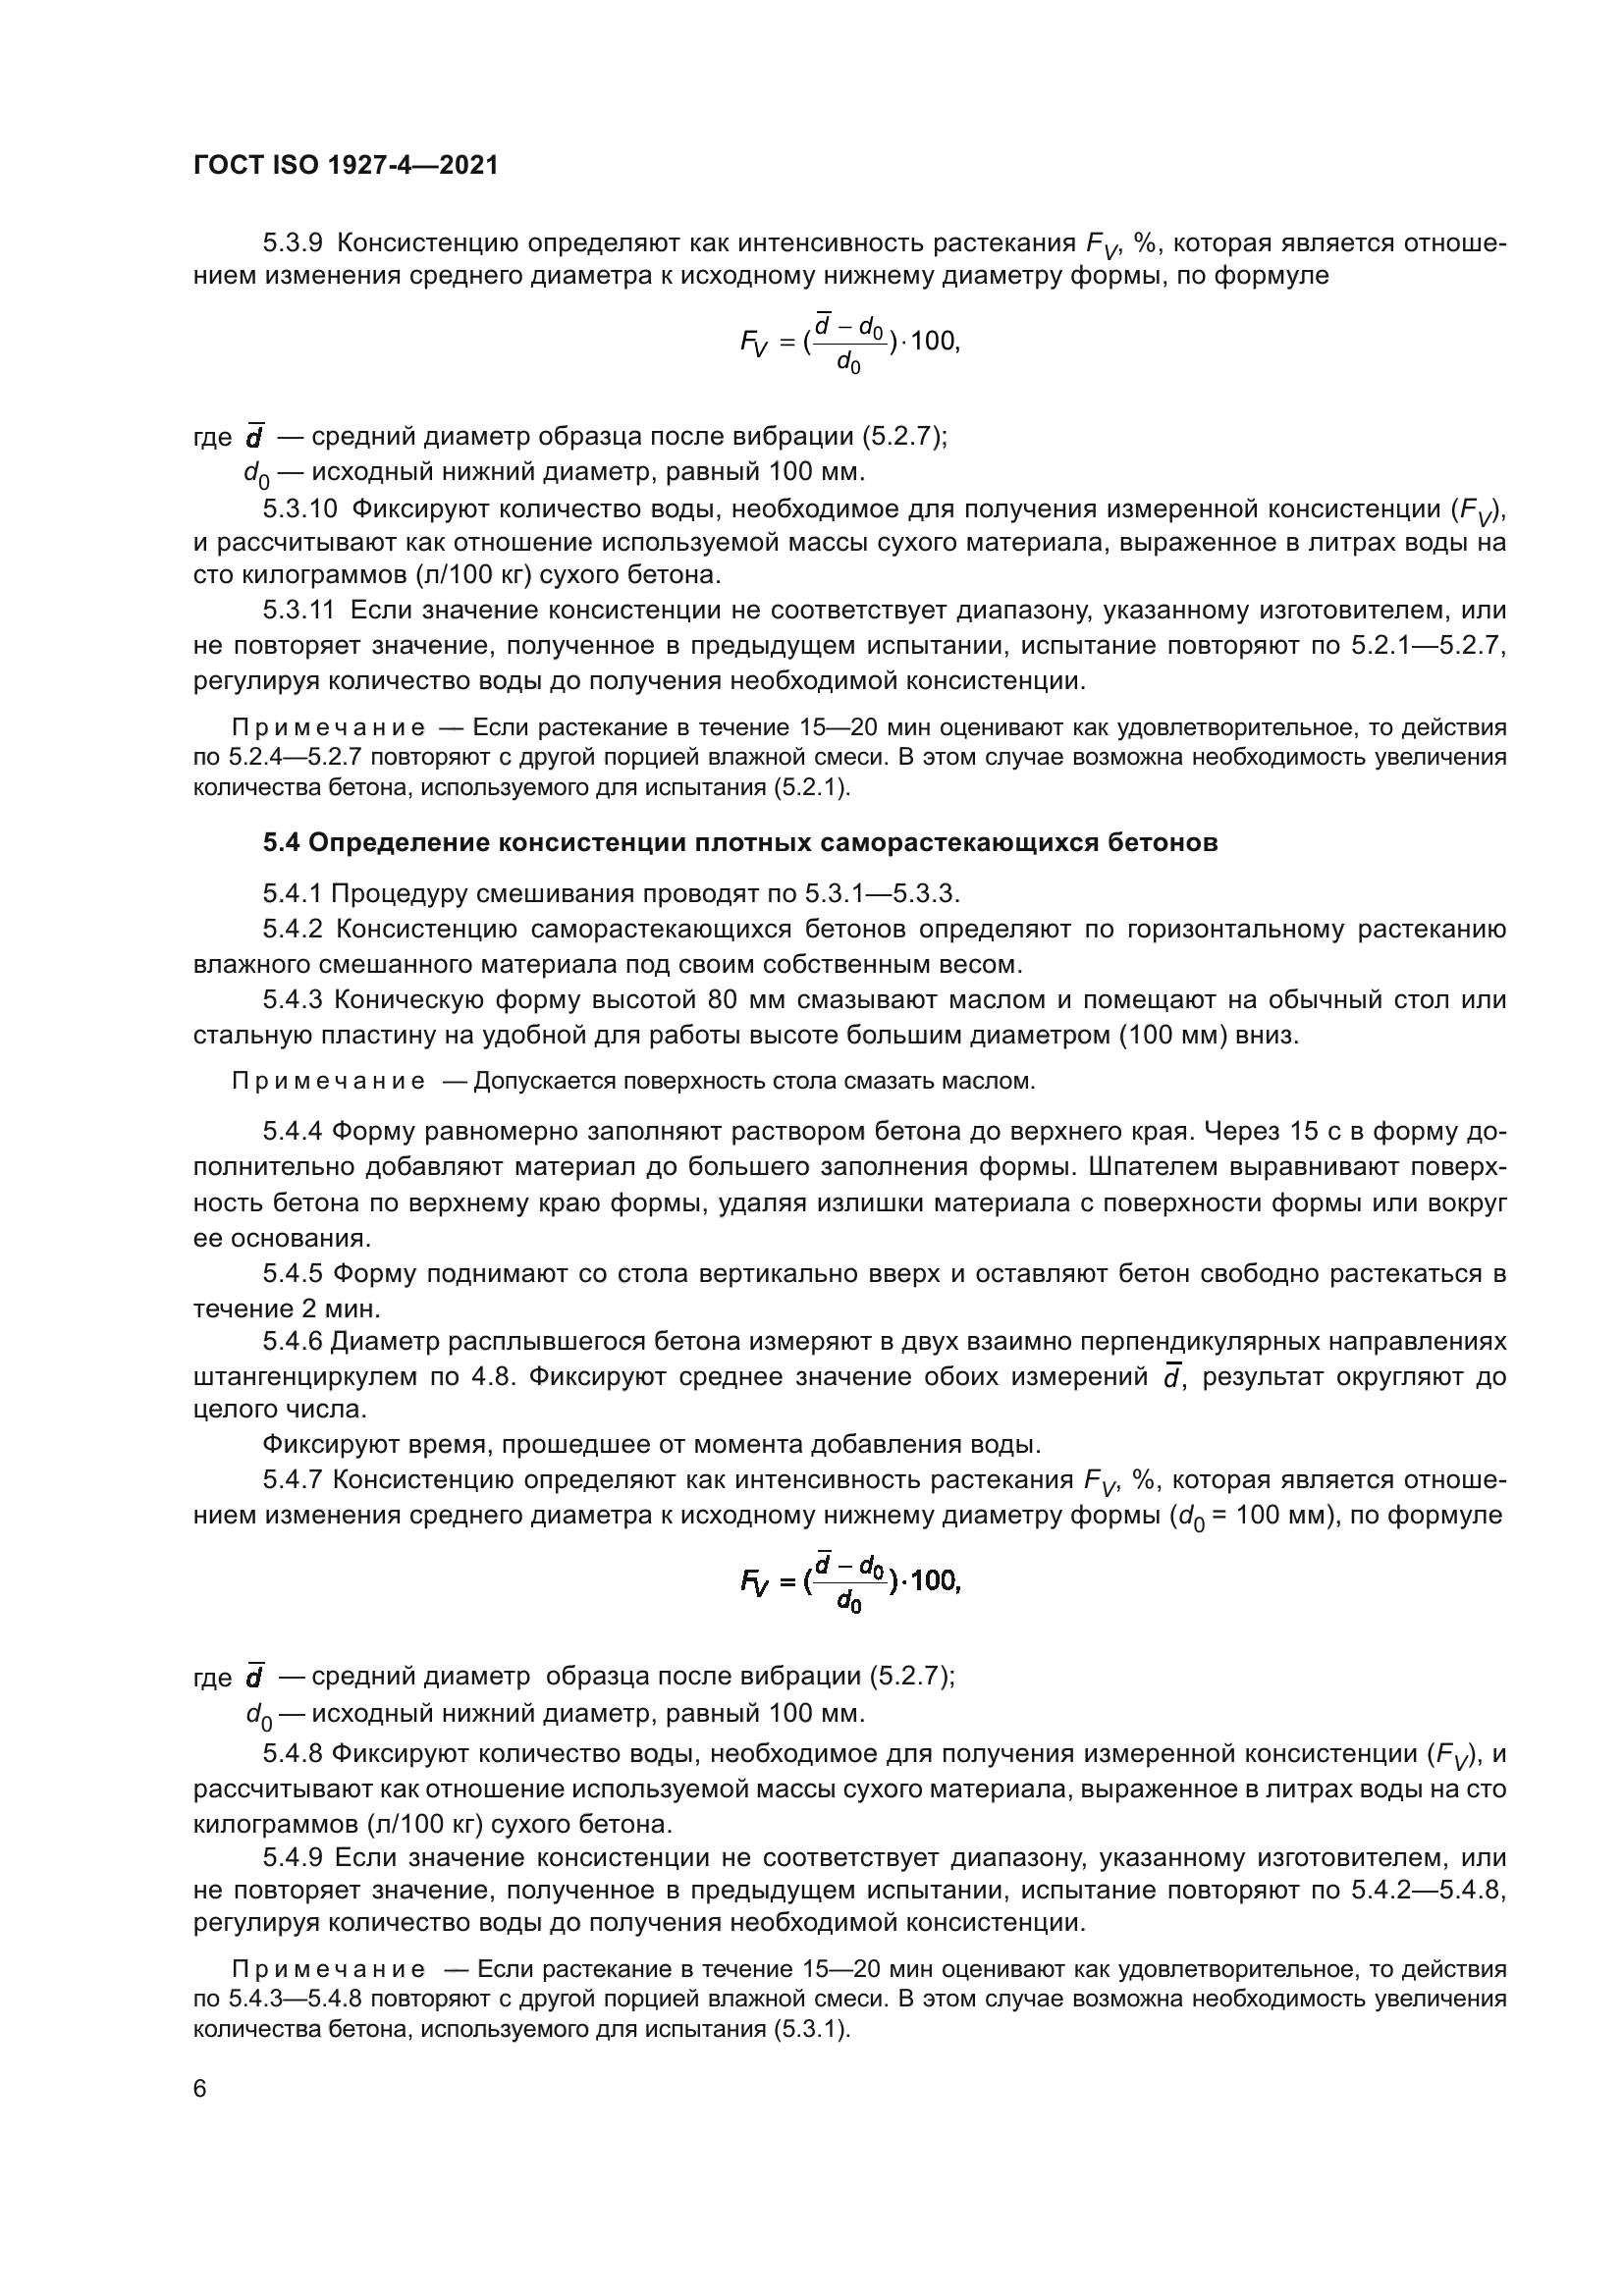 ГОСТ ISO 1927-4-2021